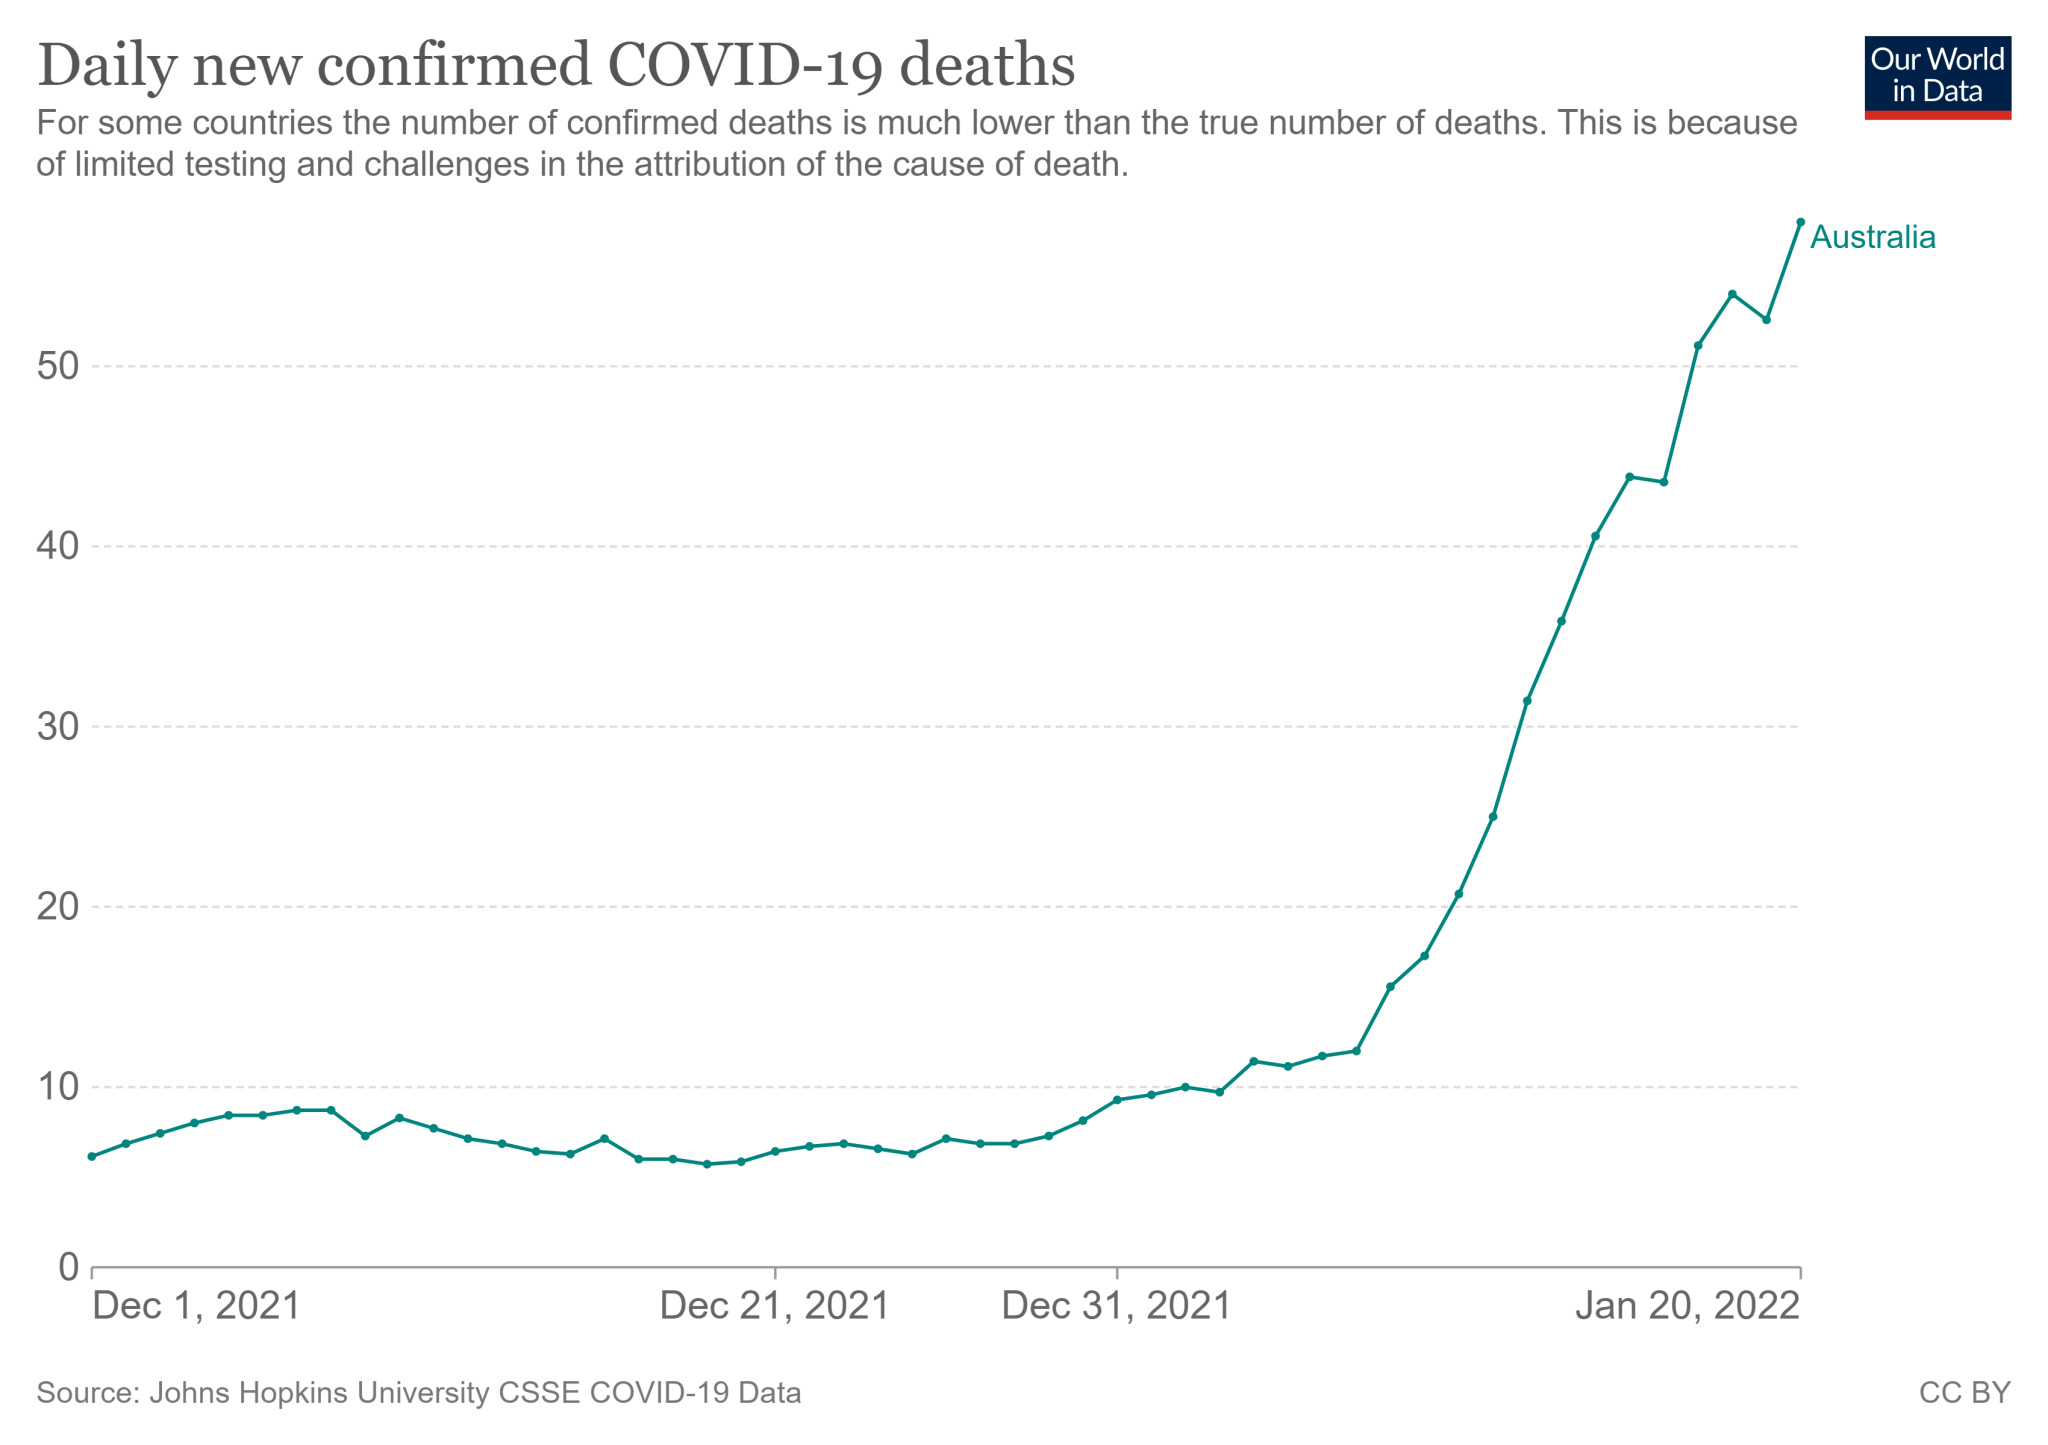 Średnia siedmiodniowa zgonów z COVID-19 w Australii od 1 grudnia 2021 roku do 20 stycznia 2022 roku